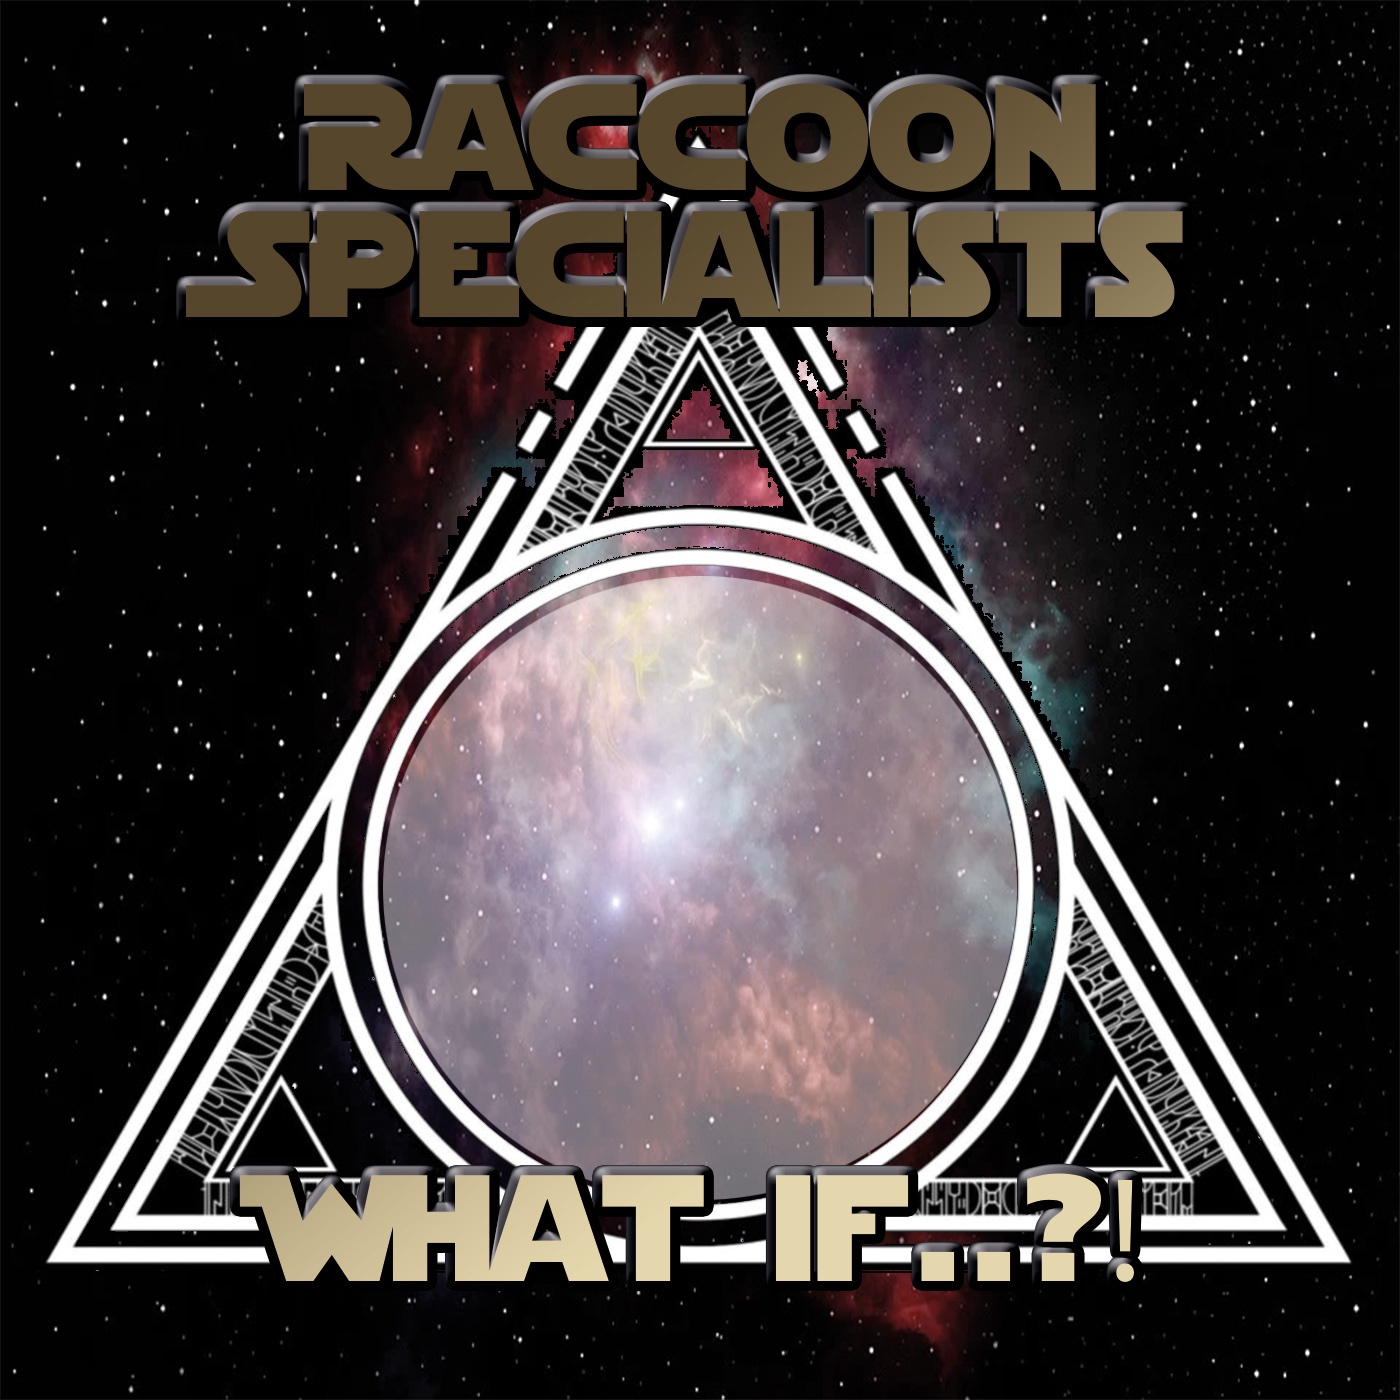 Raccoon Specialists - What if..? - Staffel 1 - Episode 7: Obi-Wan vs. Count Dooku